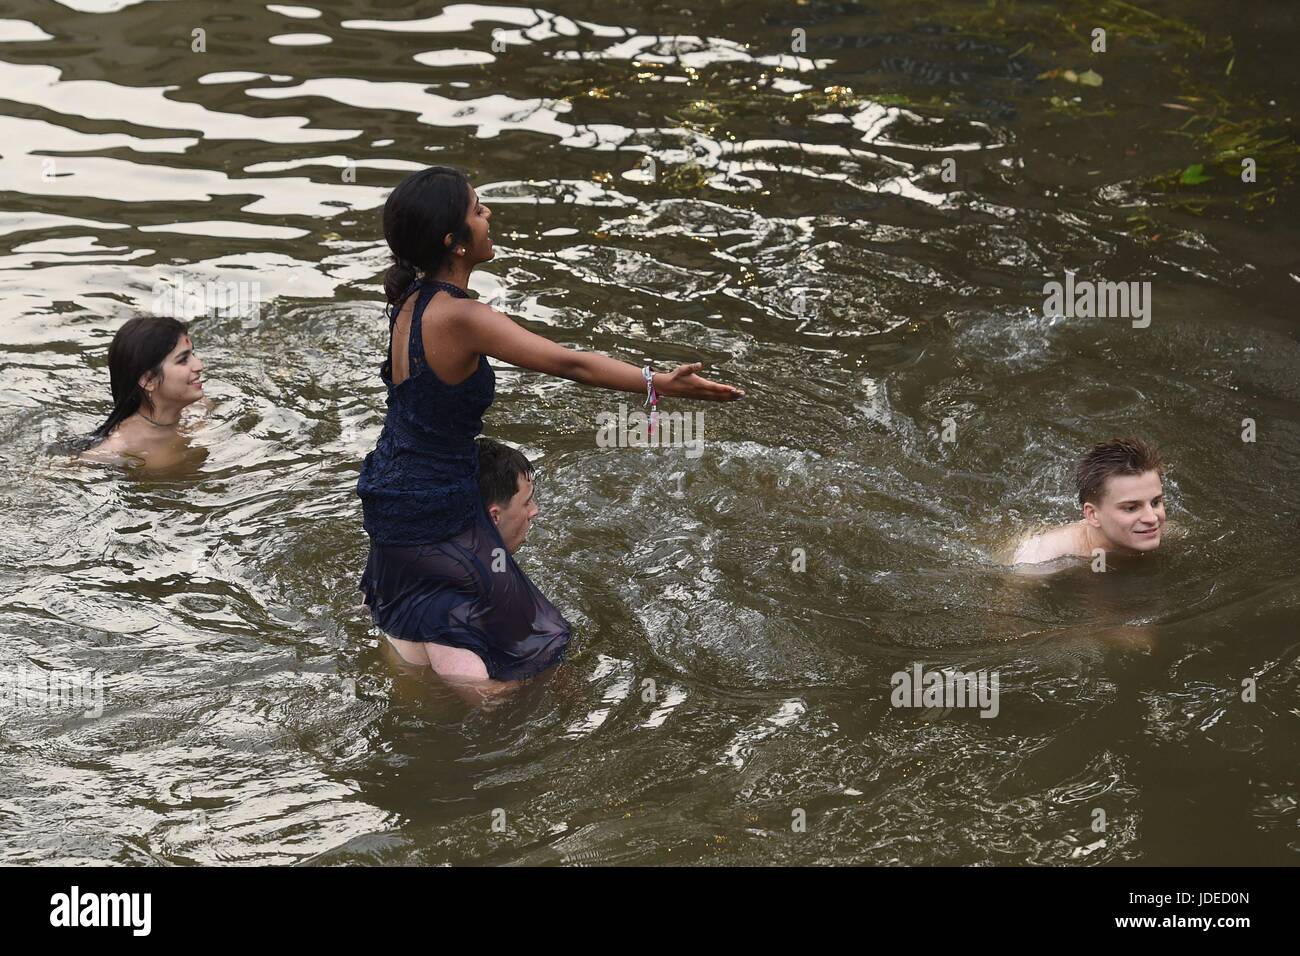 Les élèves se baigner dans la rivière Cam après avoir assisté à une balle peut-être à l'Université de Cambridge qui est la célébration traditionnelle pour marquer la fin de l'année universitaire. Banque D'Images